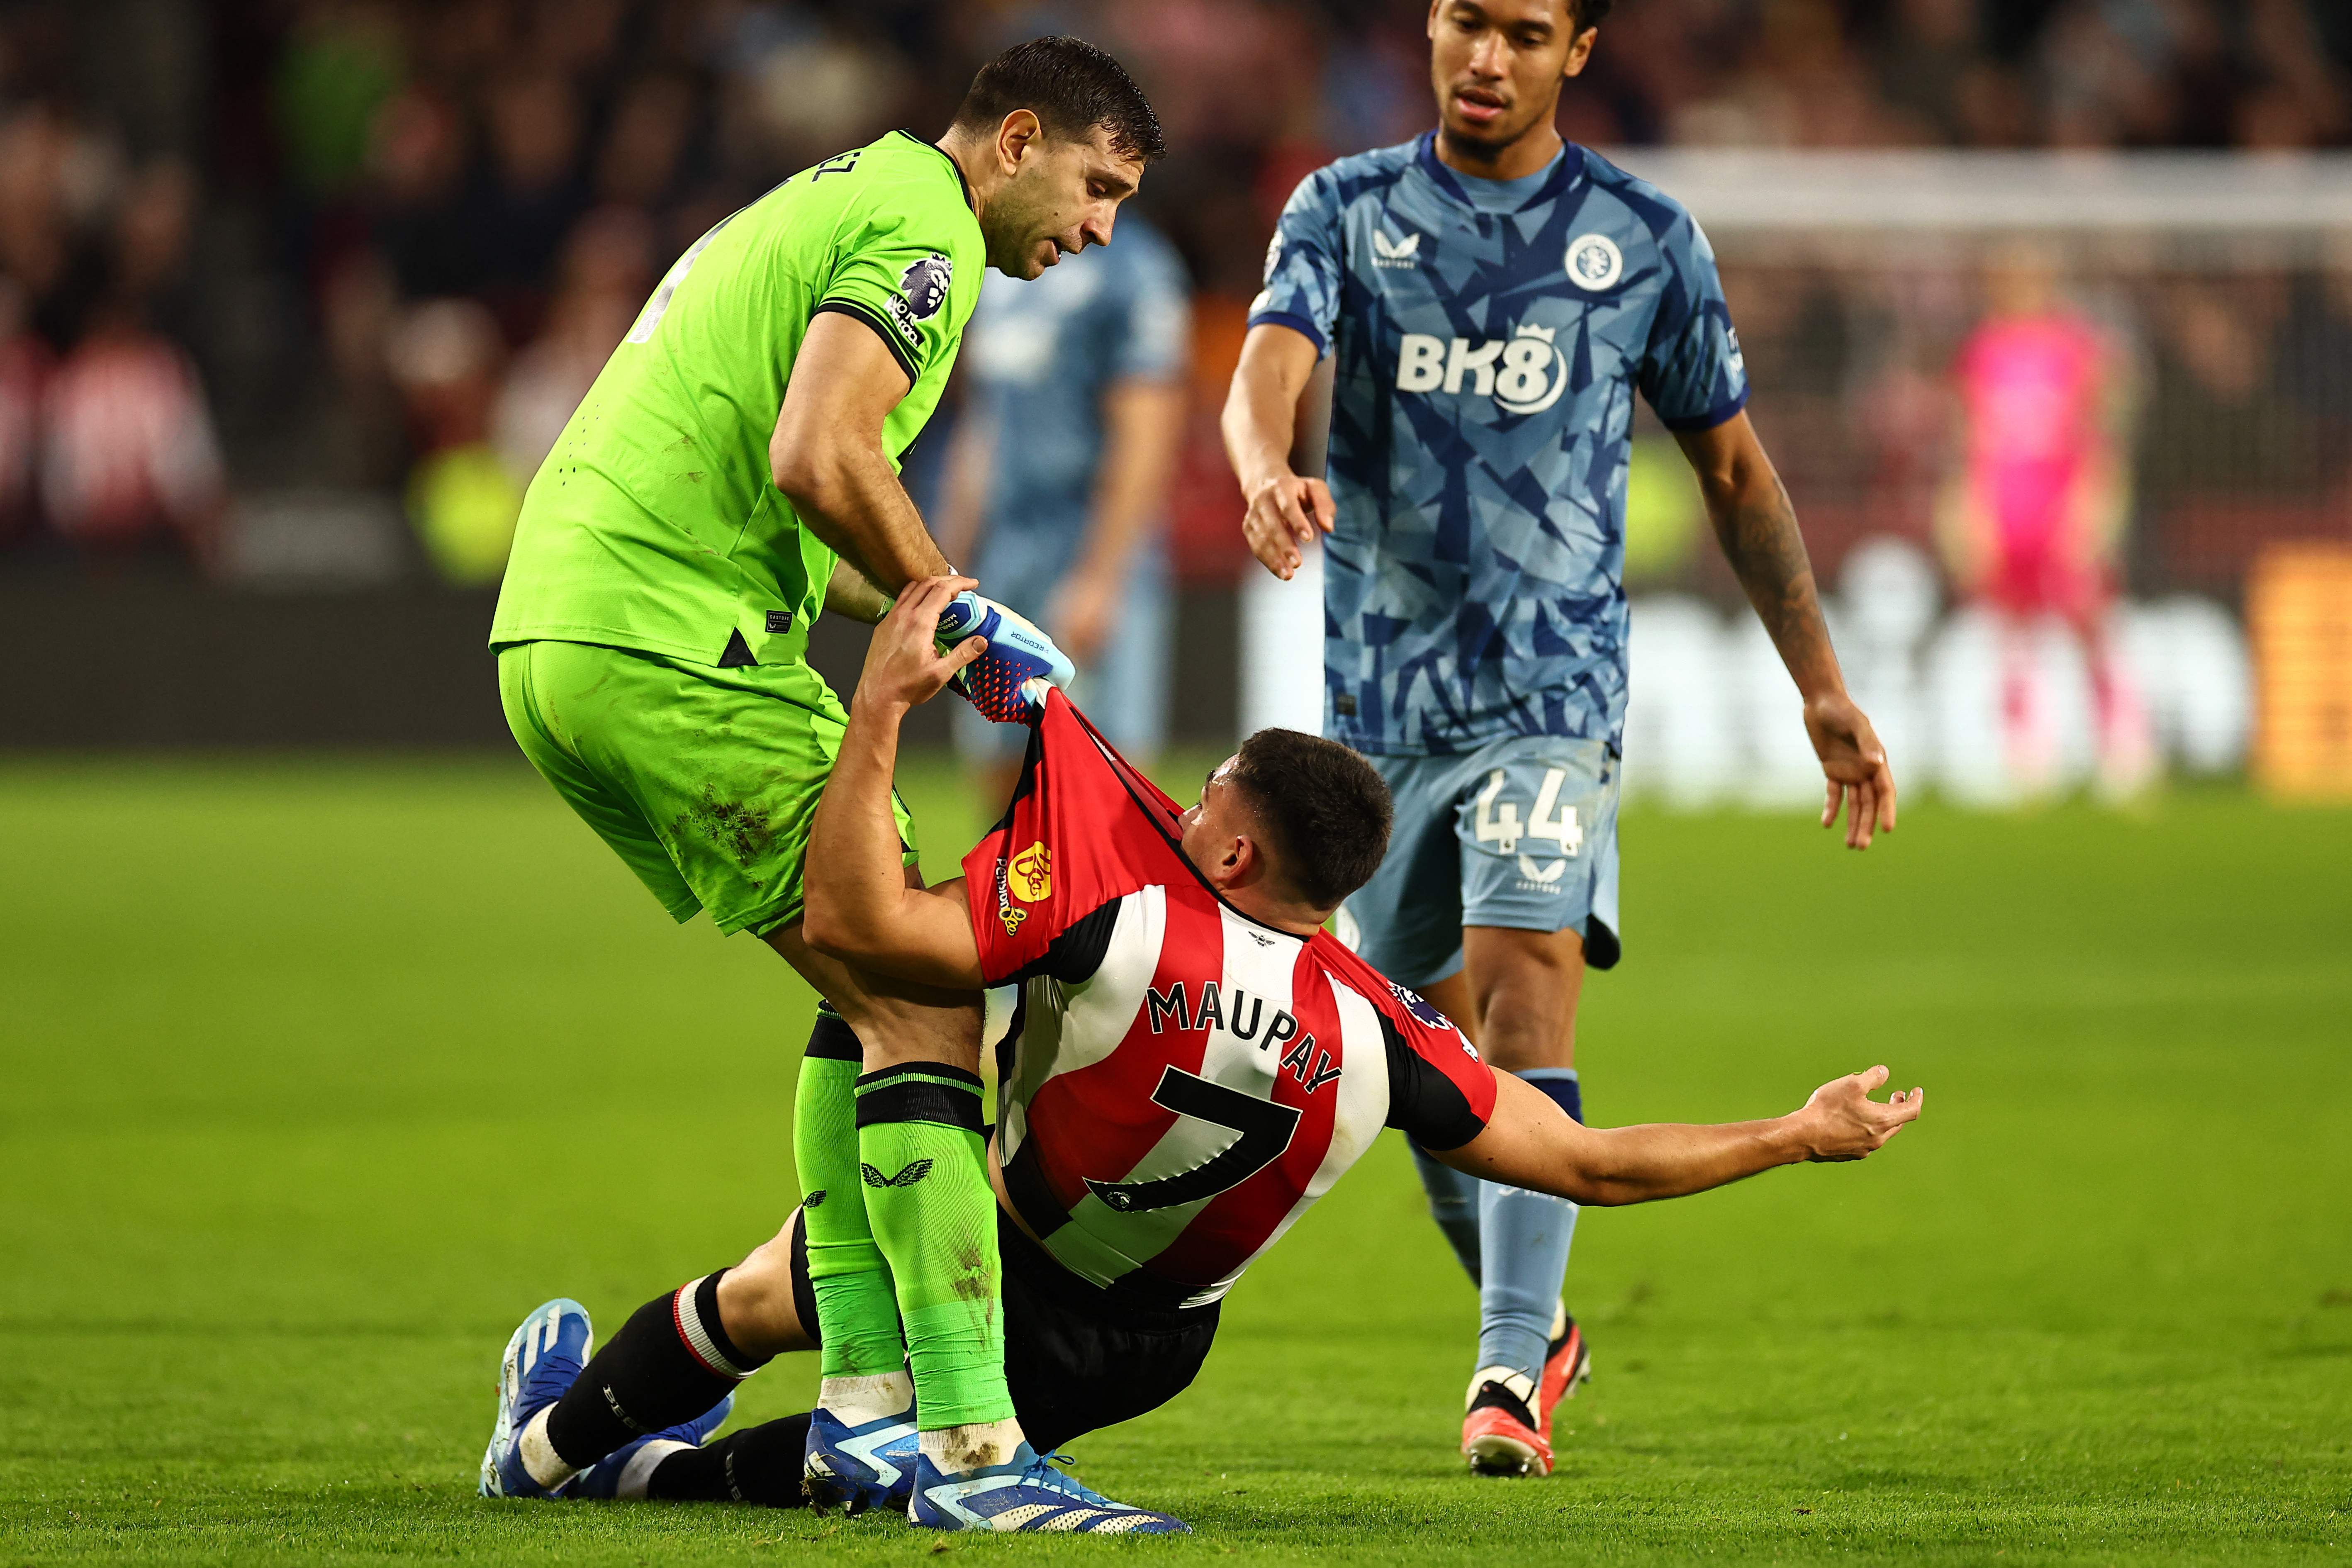 El portero del Aston Villa, Emiliano Martínez (verde), se enfrenta a su rival del Brentford, Neal Maupay. (Foto Prensa Libre: AFP)